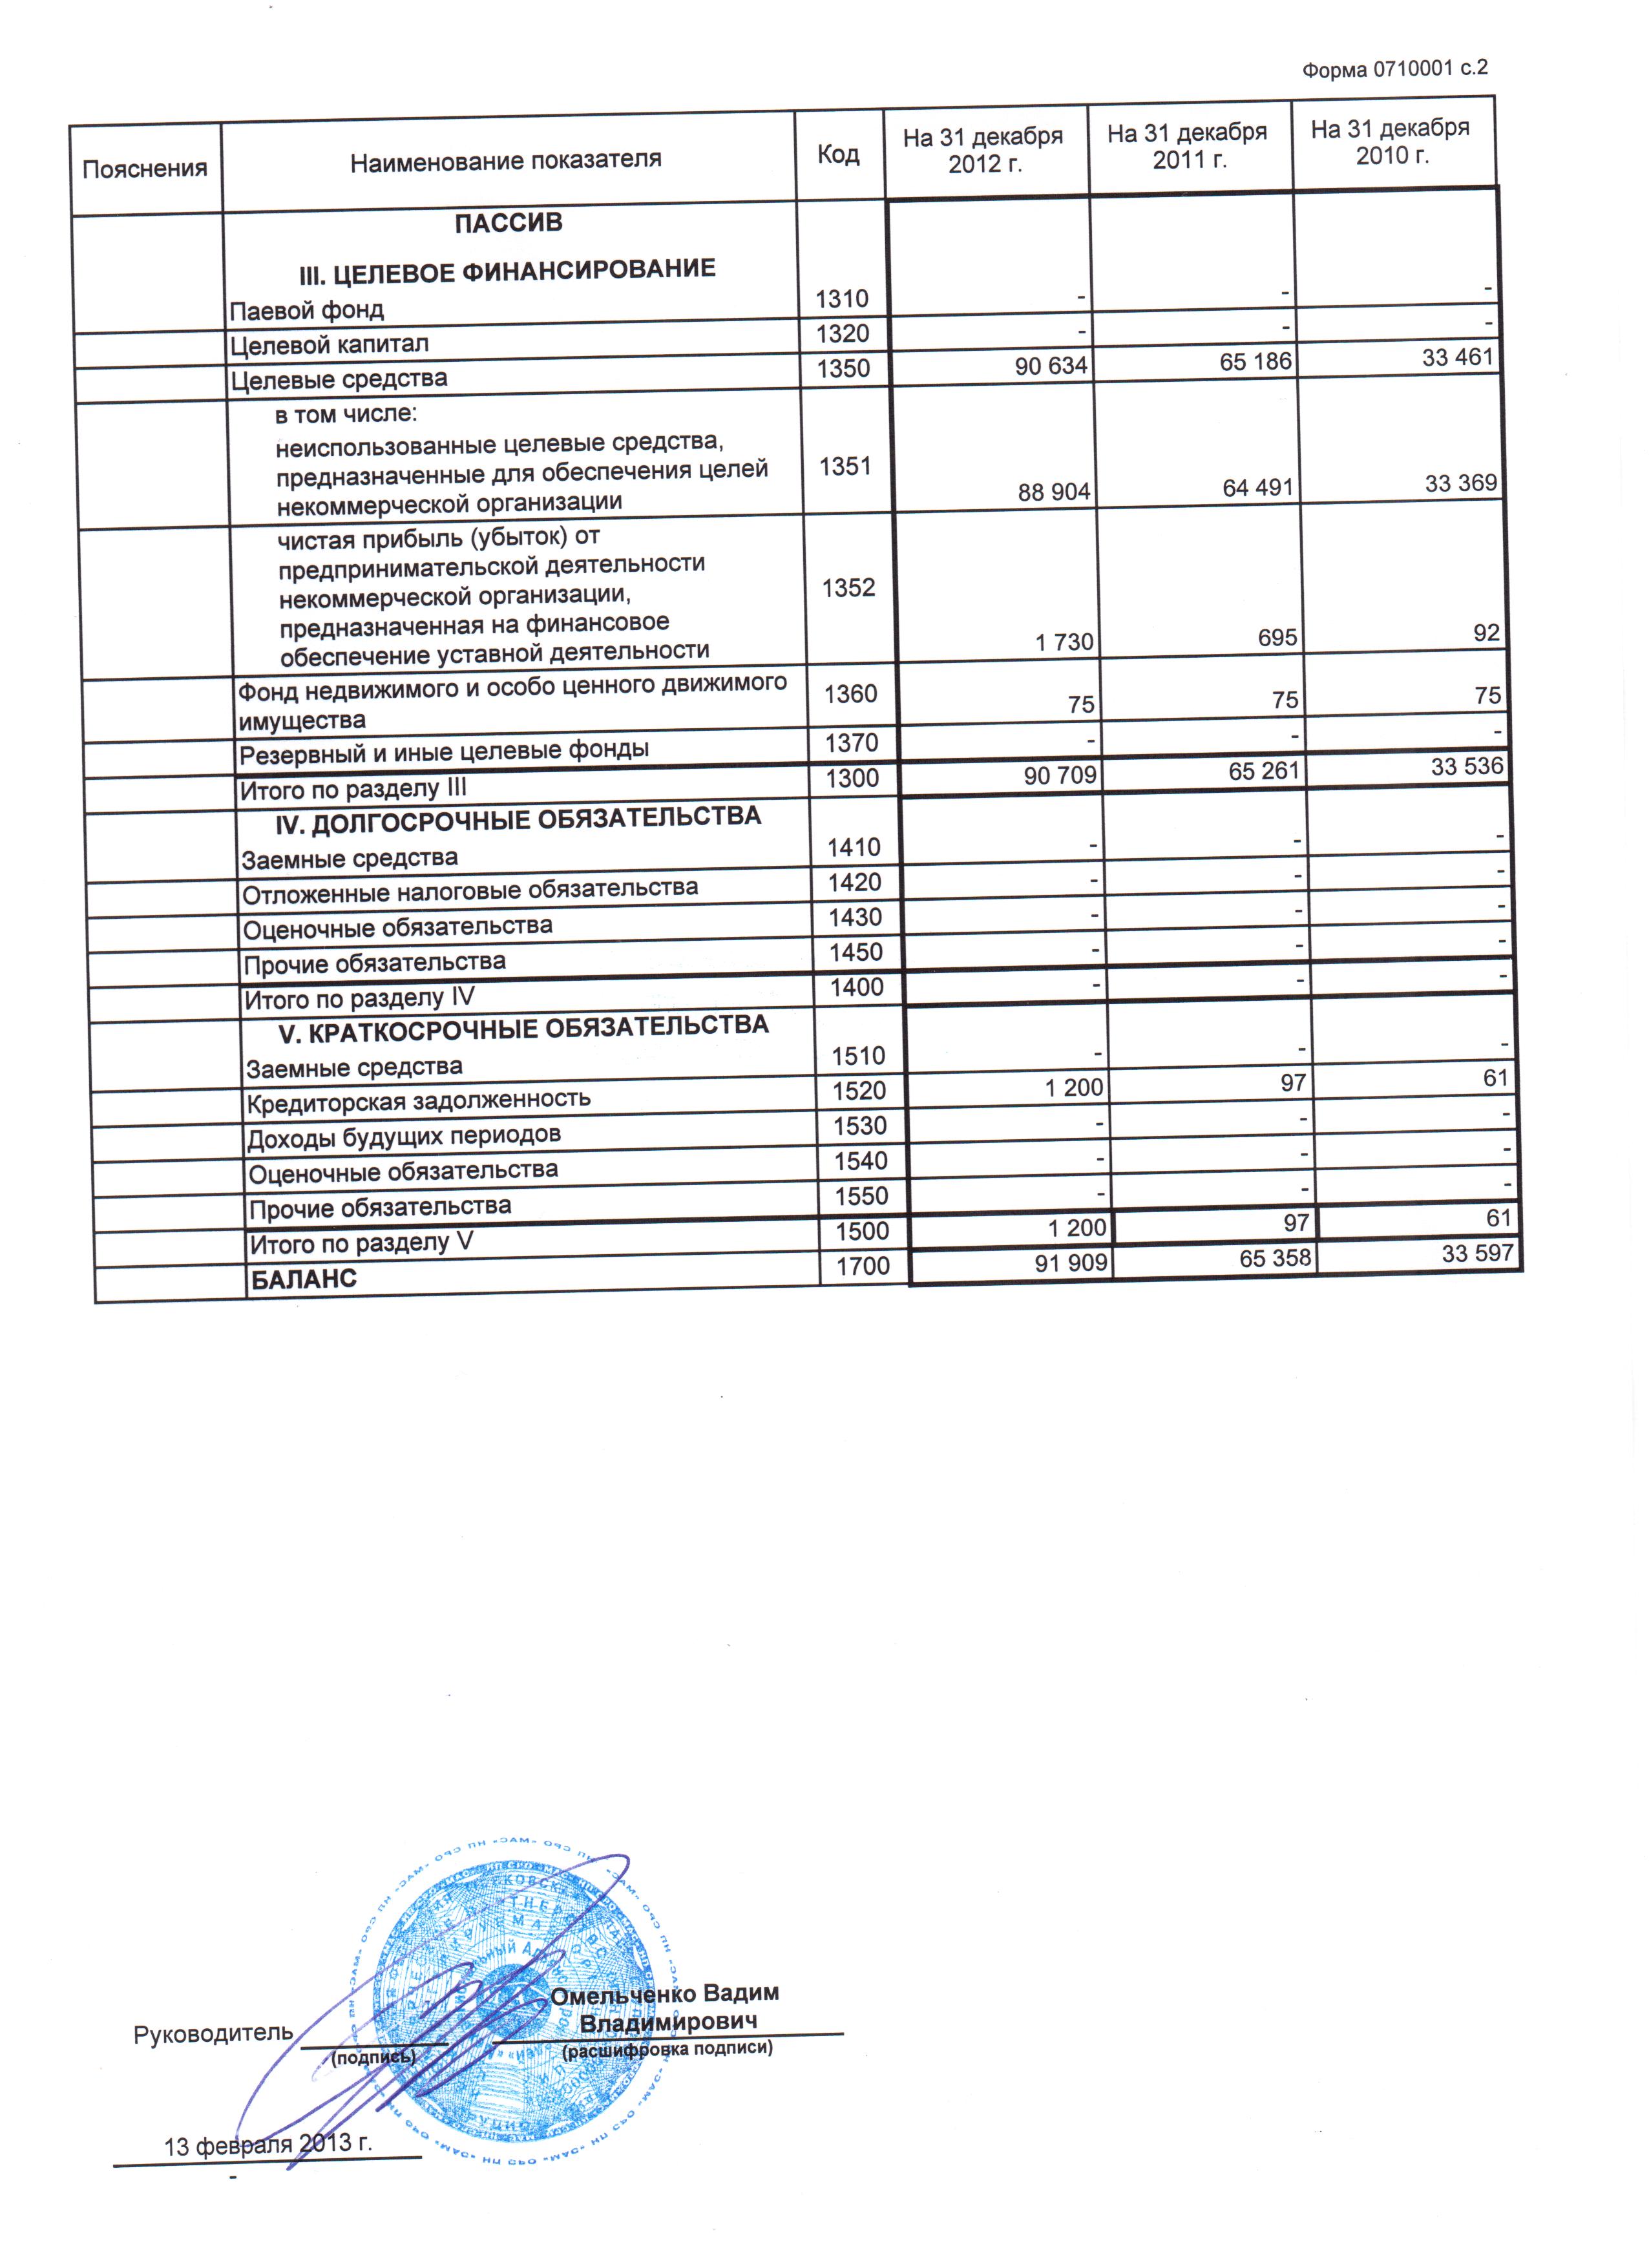 Бухгалтерская отчетность за 2012 г. (лист 2)